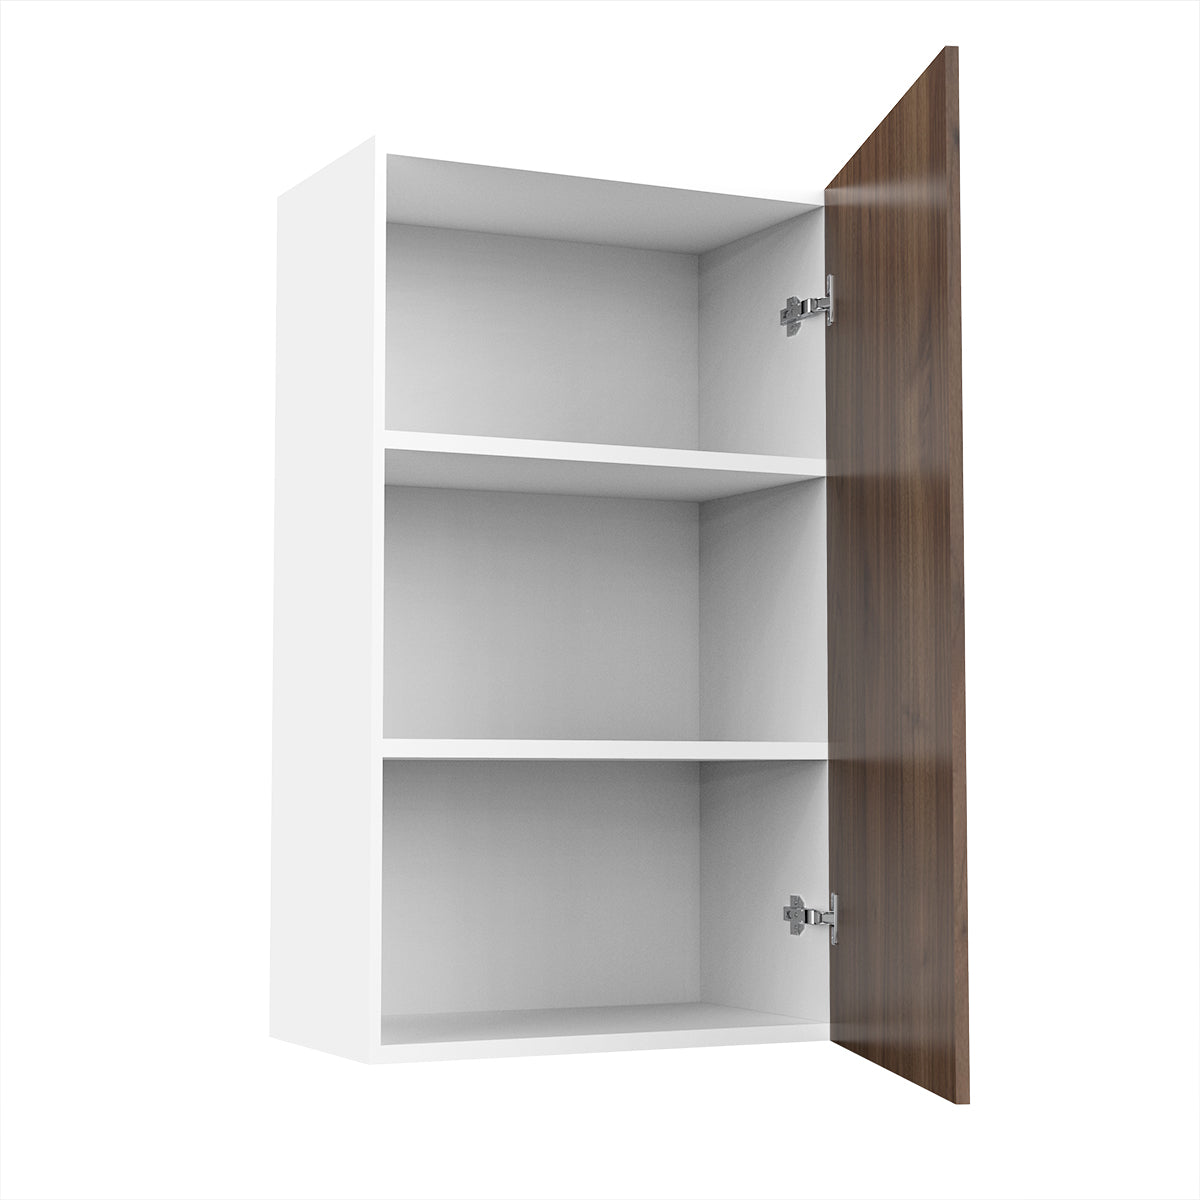 RTA - Walnut - Single Door Wall Cabinets | 24"W x 36"H x 12"D